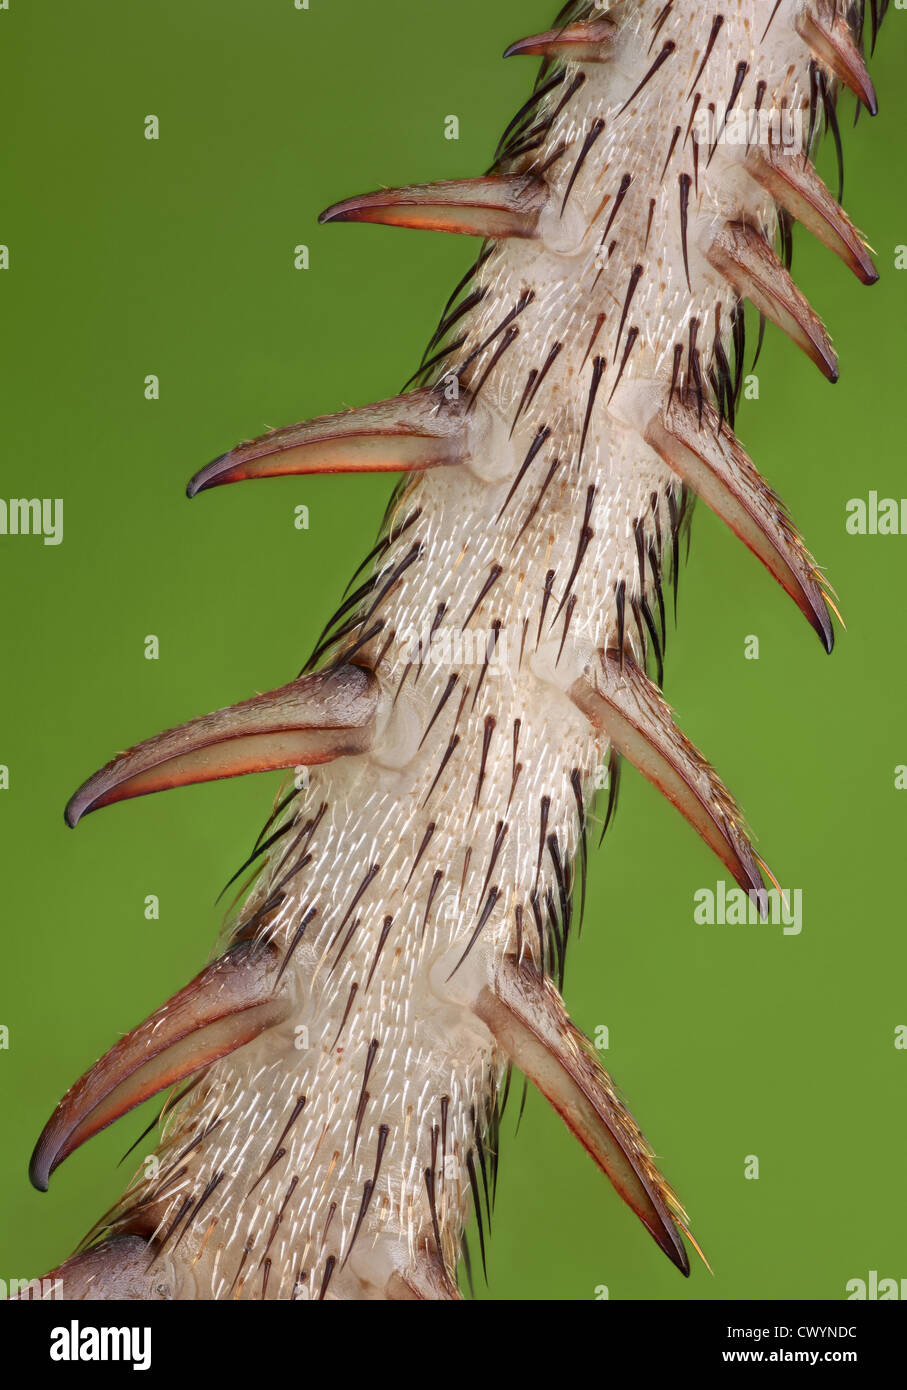 Dettaglio della gamba di una casa di cricket, macro shot Foto Stock